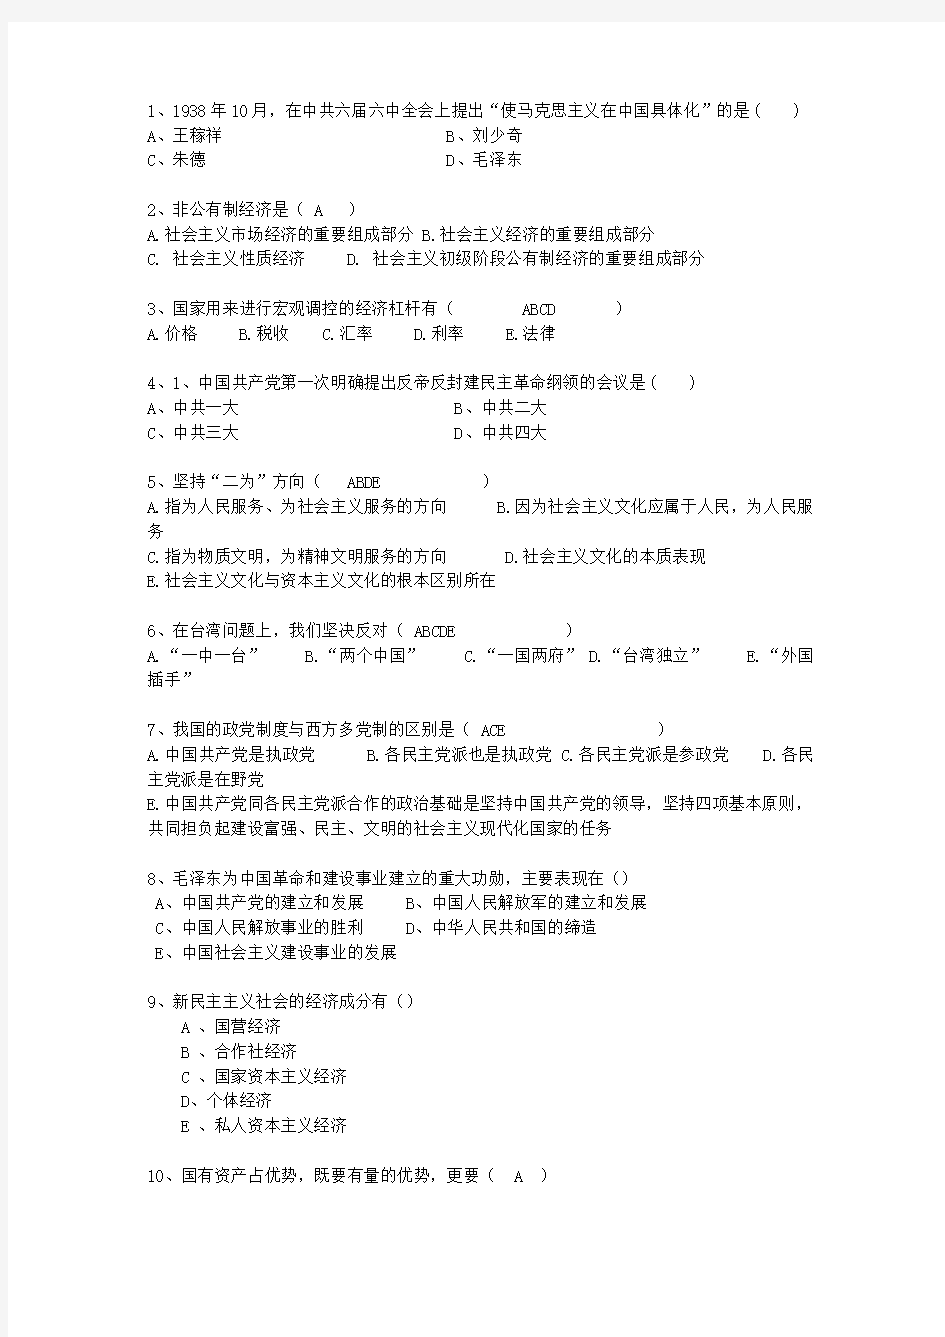 2011香港特别行政区毛概复习资料考试技巧、答题原则